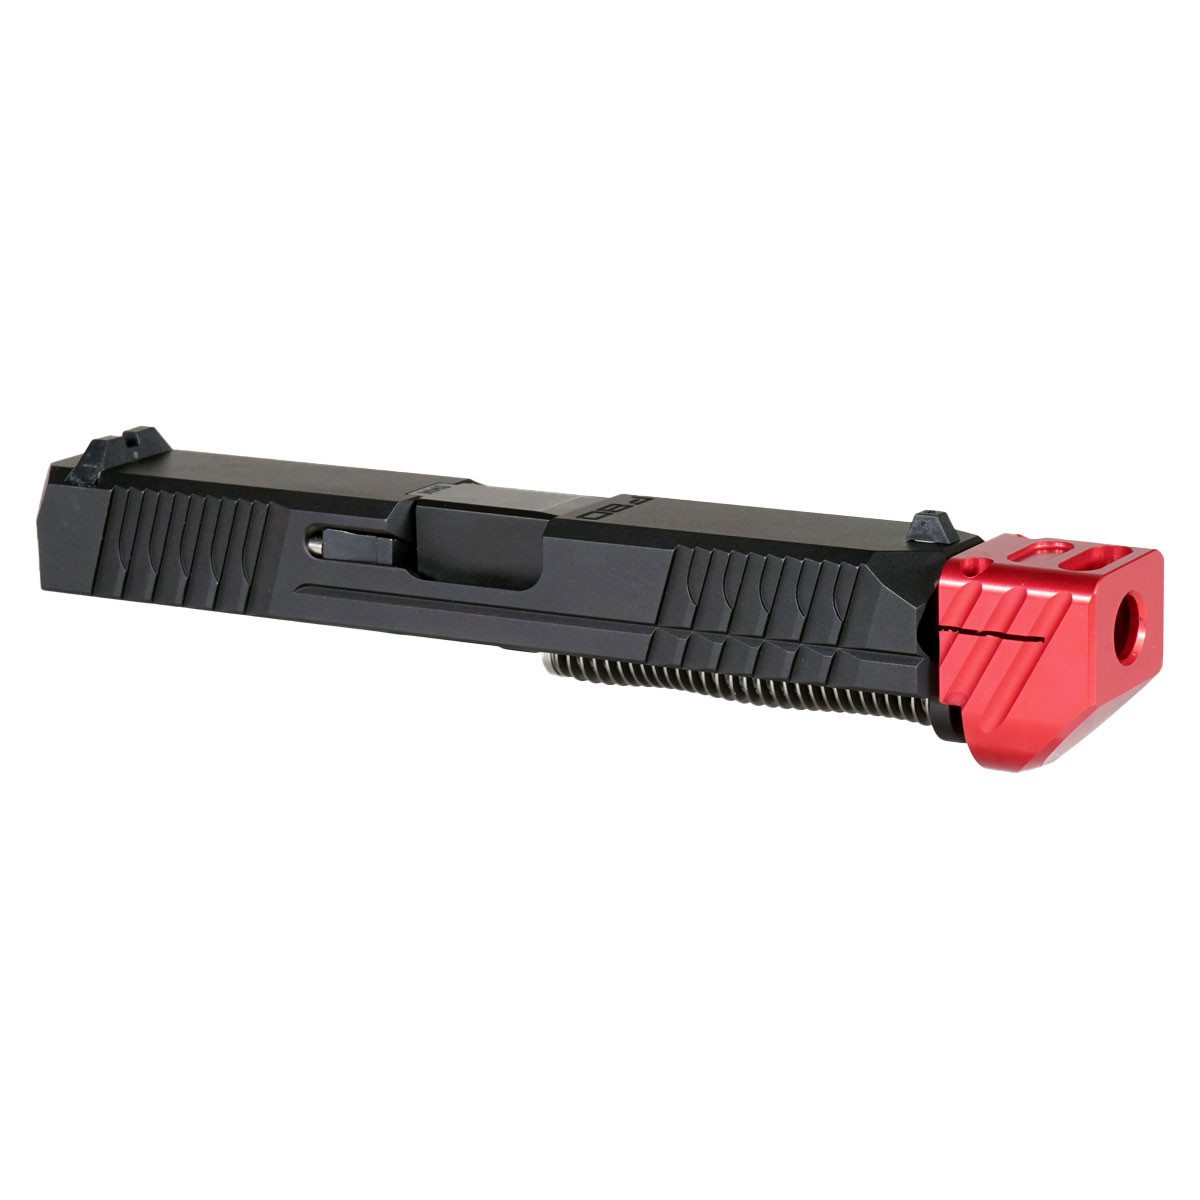 OTD 'Paracausal V3 w/ Red Compensator' 9mm Complete Slide Kit - Glock 19 Gen 1-3 Compatible